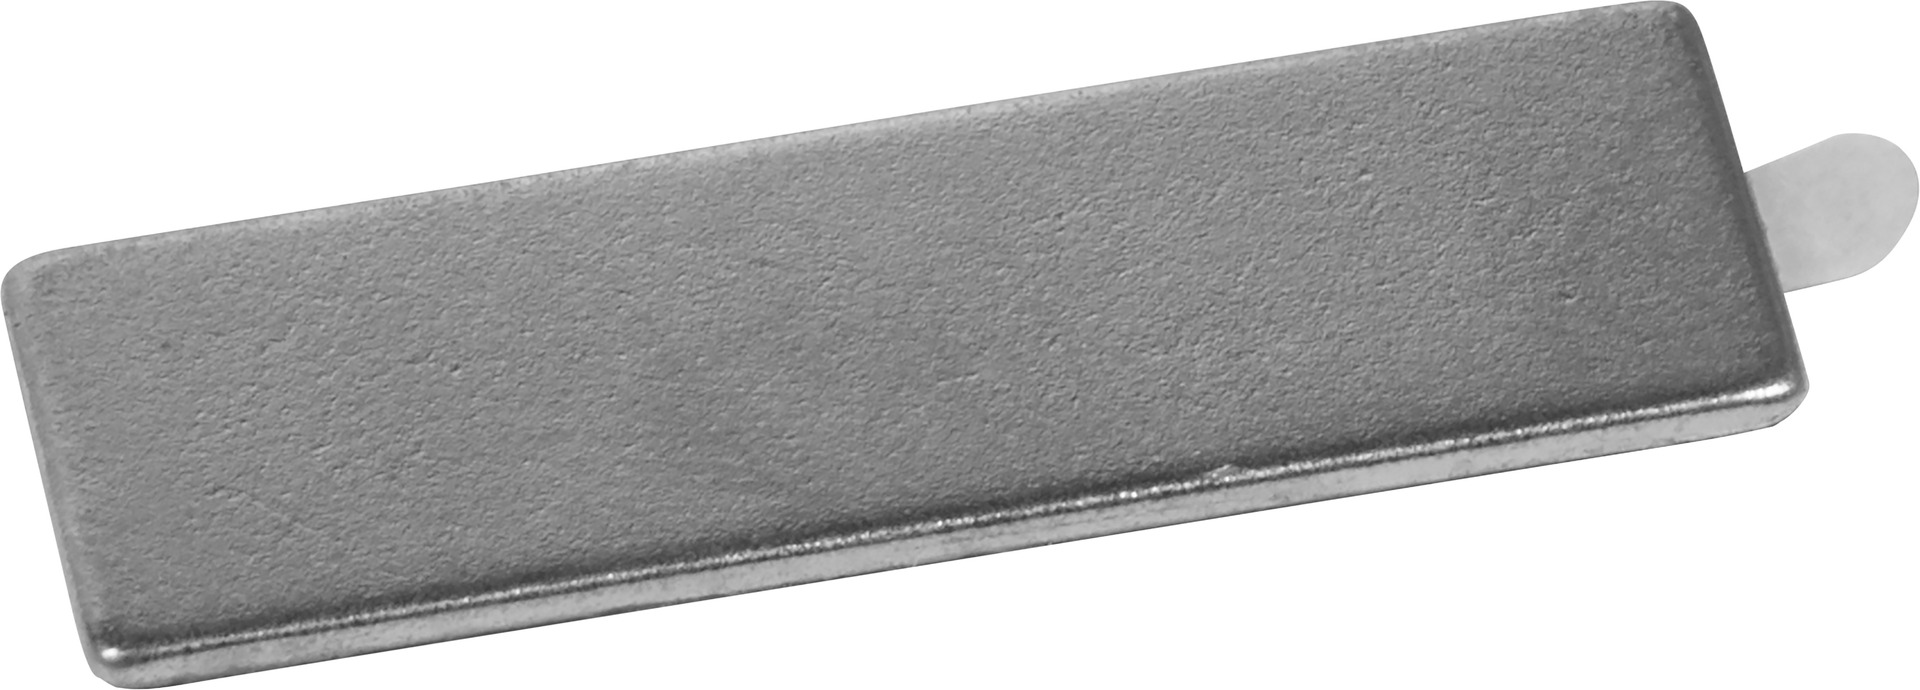 Neodym Scheiben-Magnet selbstklebend - Ausführung: 20x2mm - Leitermann